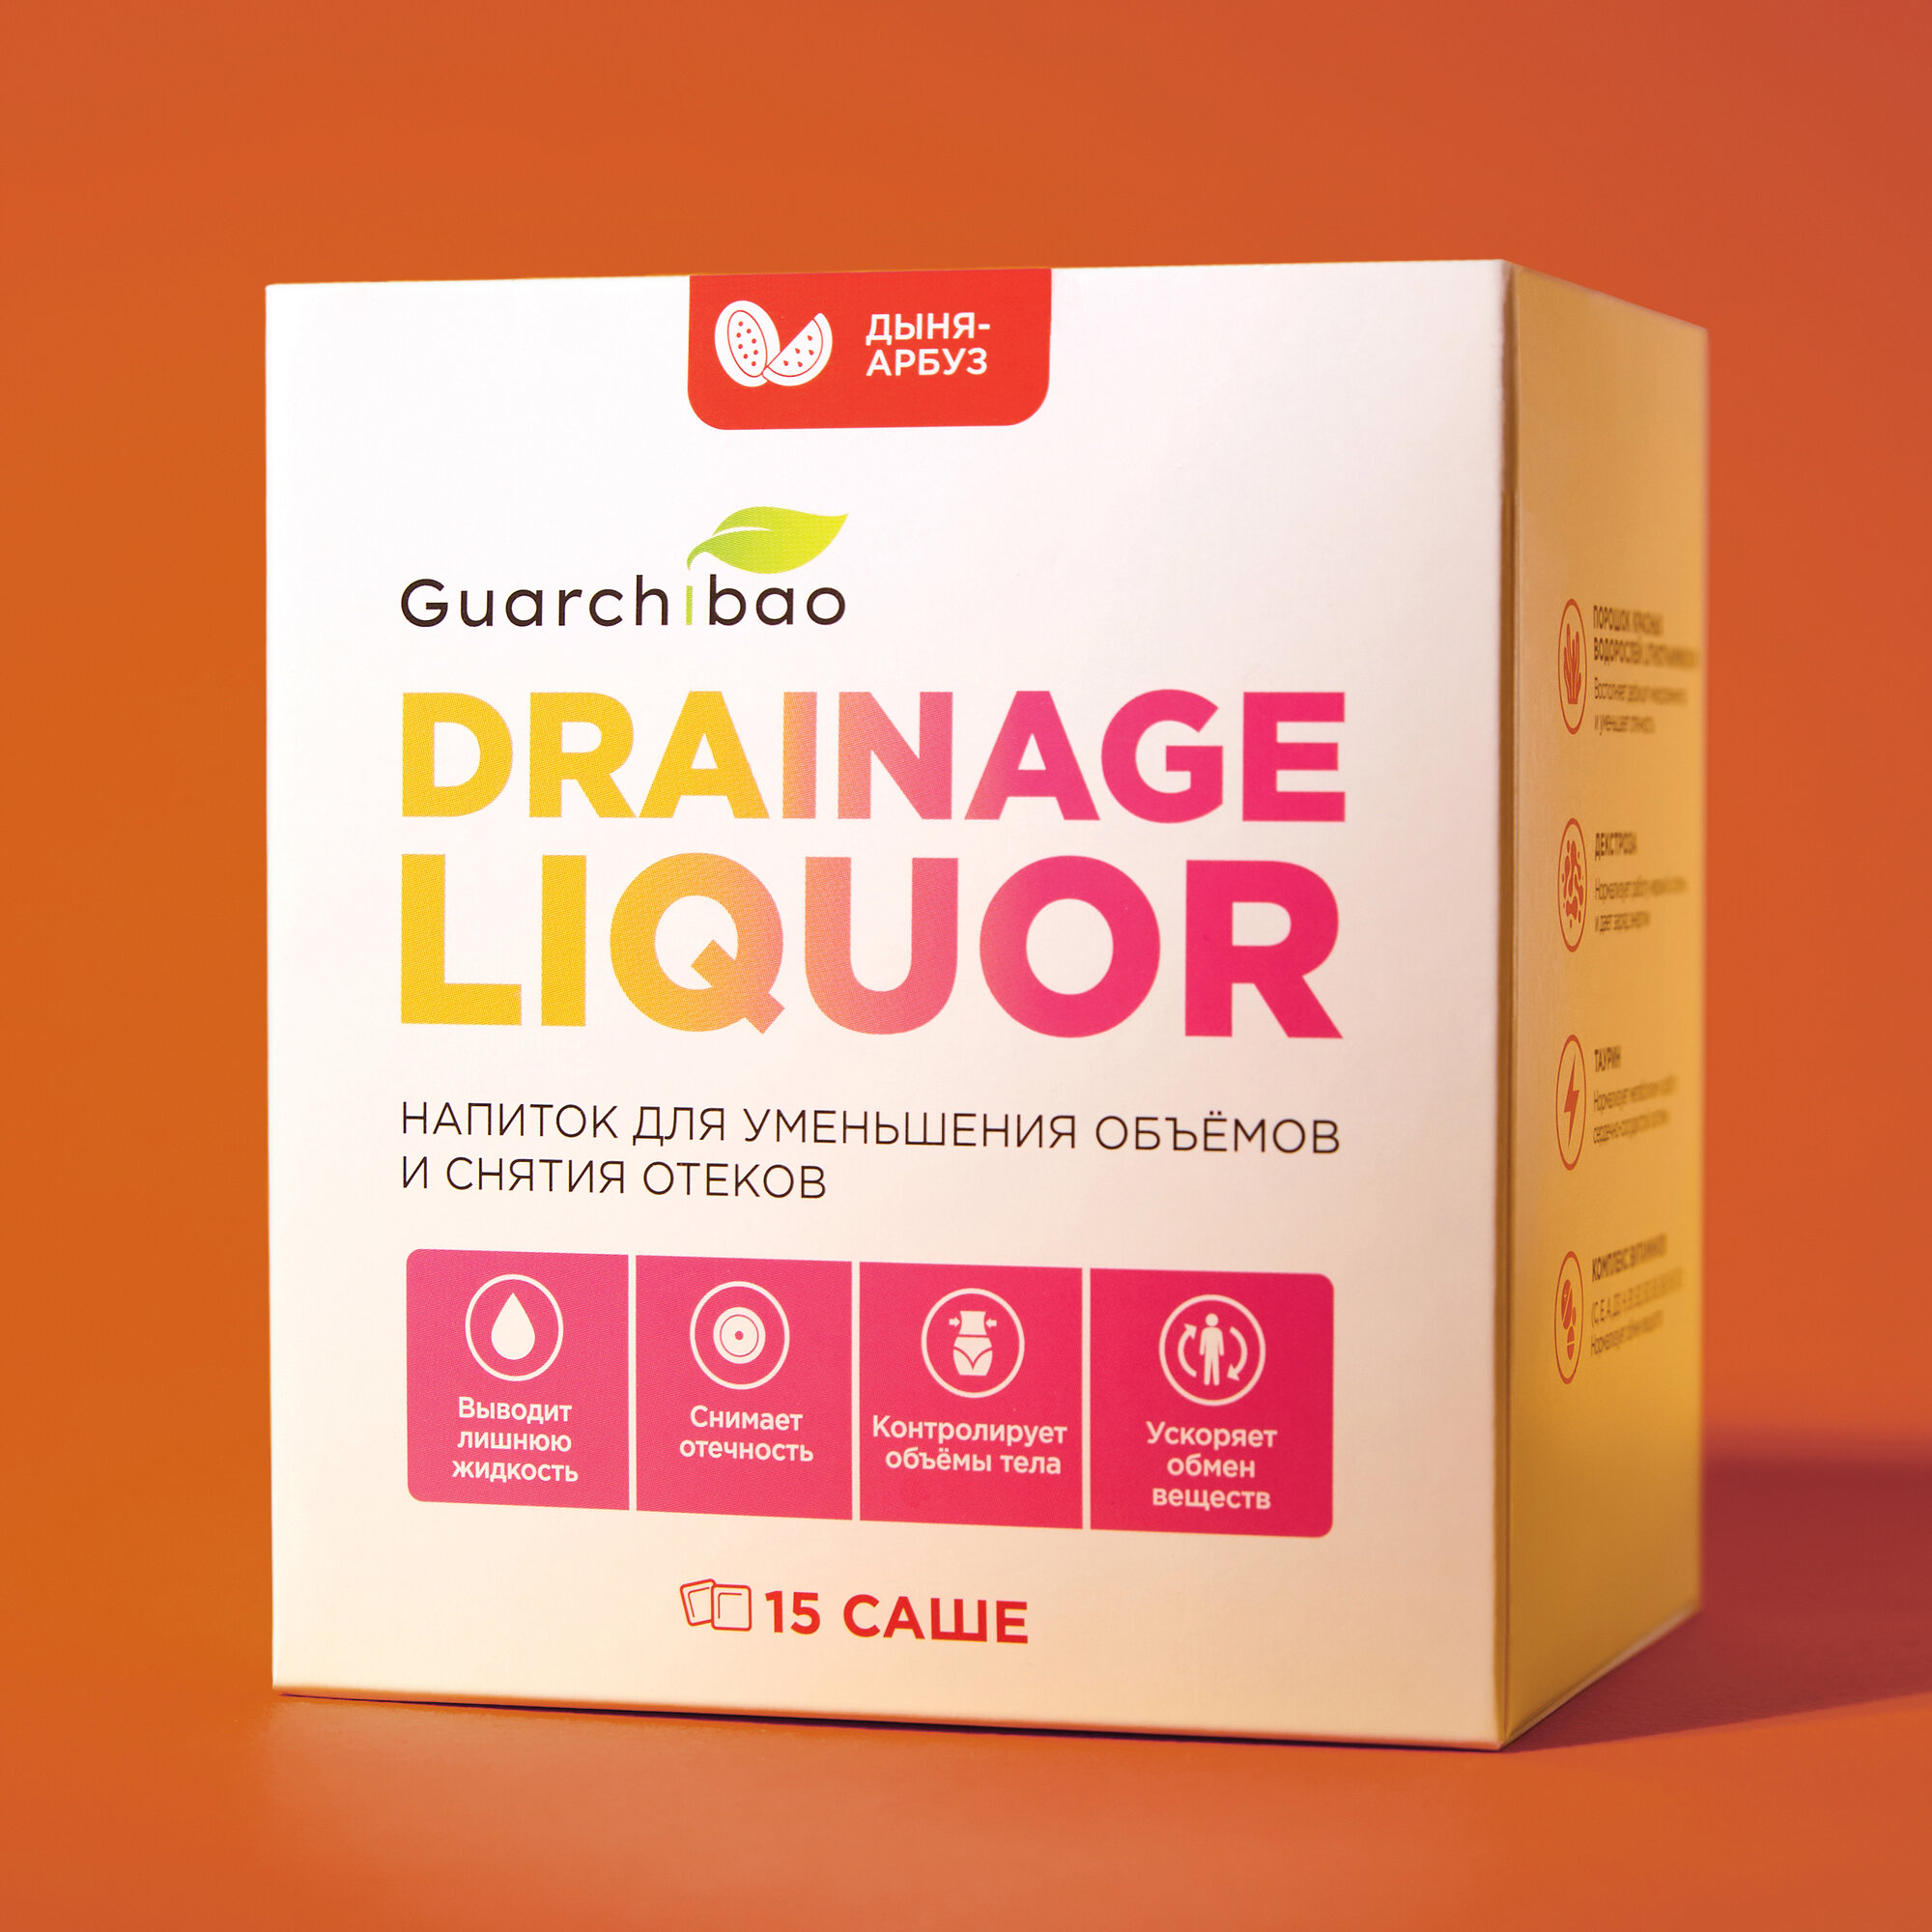 Дренажный напиток Guarchibao Drainage Liquor со вкусом Арбуза и Дыни для снятия отеков и уменьшения объемов, для похудения, 1 упаковка (15 саше)